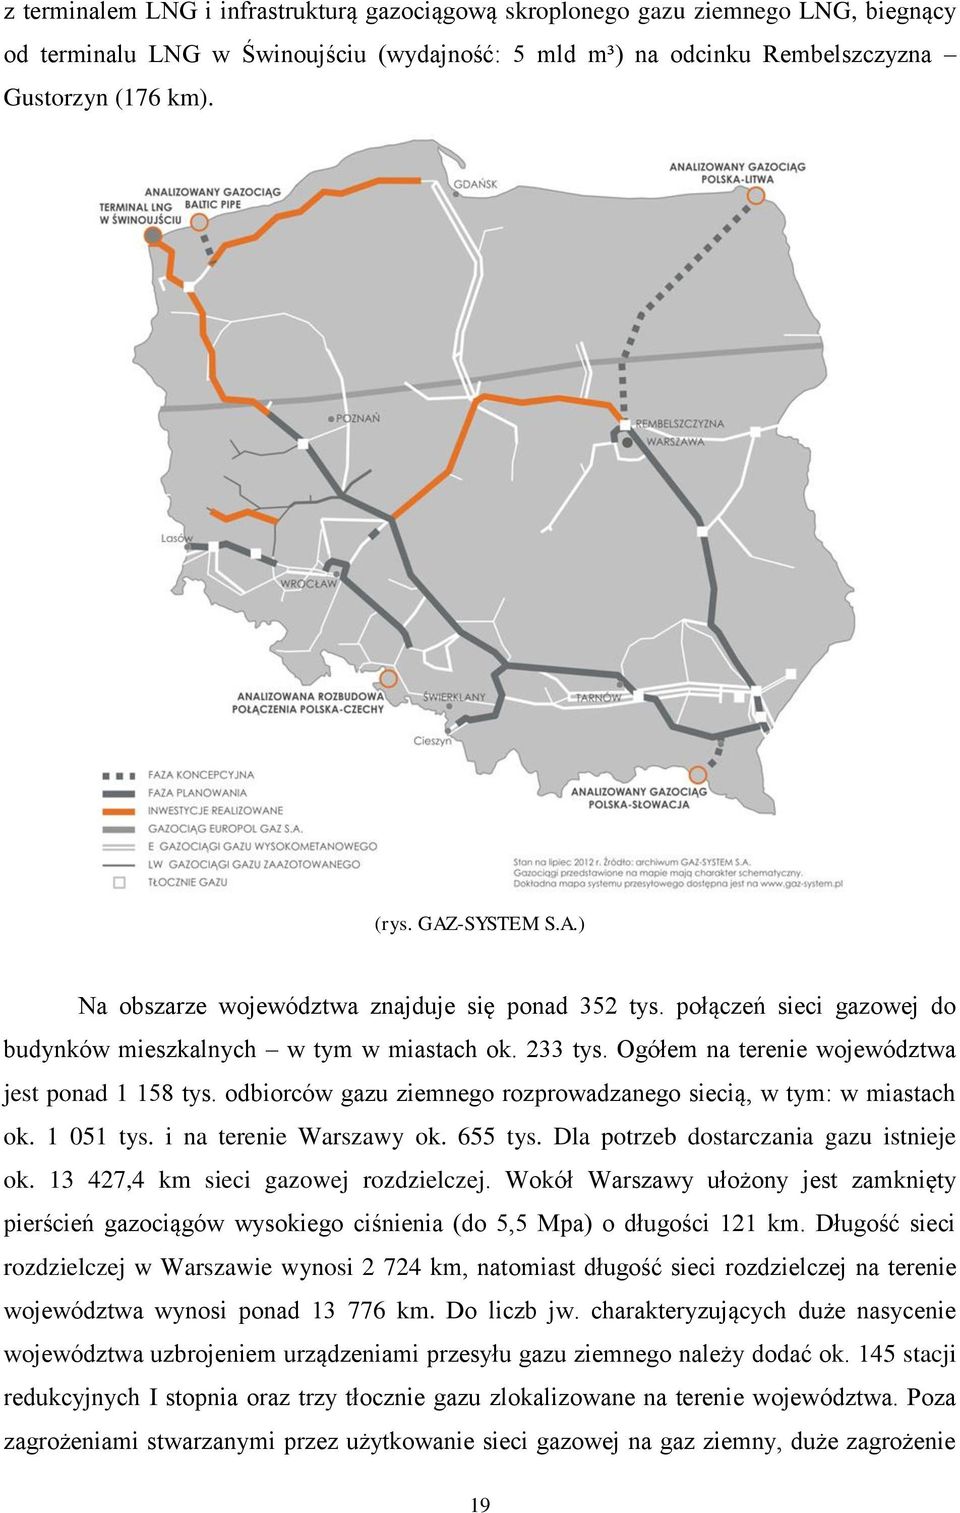 odbiorców gazu ziemnego rozprowadzanego siecią, w tym: w miastach ok. 1 051 tys. i na terenie Warszawy ok. 655 tys. Dla potrzeb dostarczania gazu istnieje ok. 13 427,4 km sieci gazowej rozdzielczej.